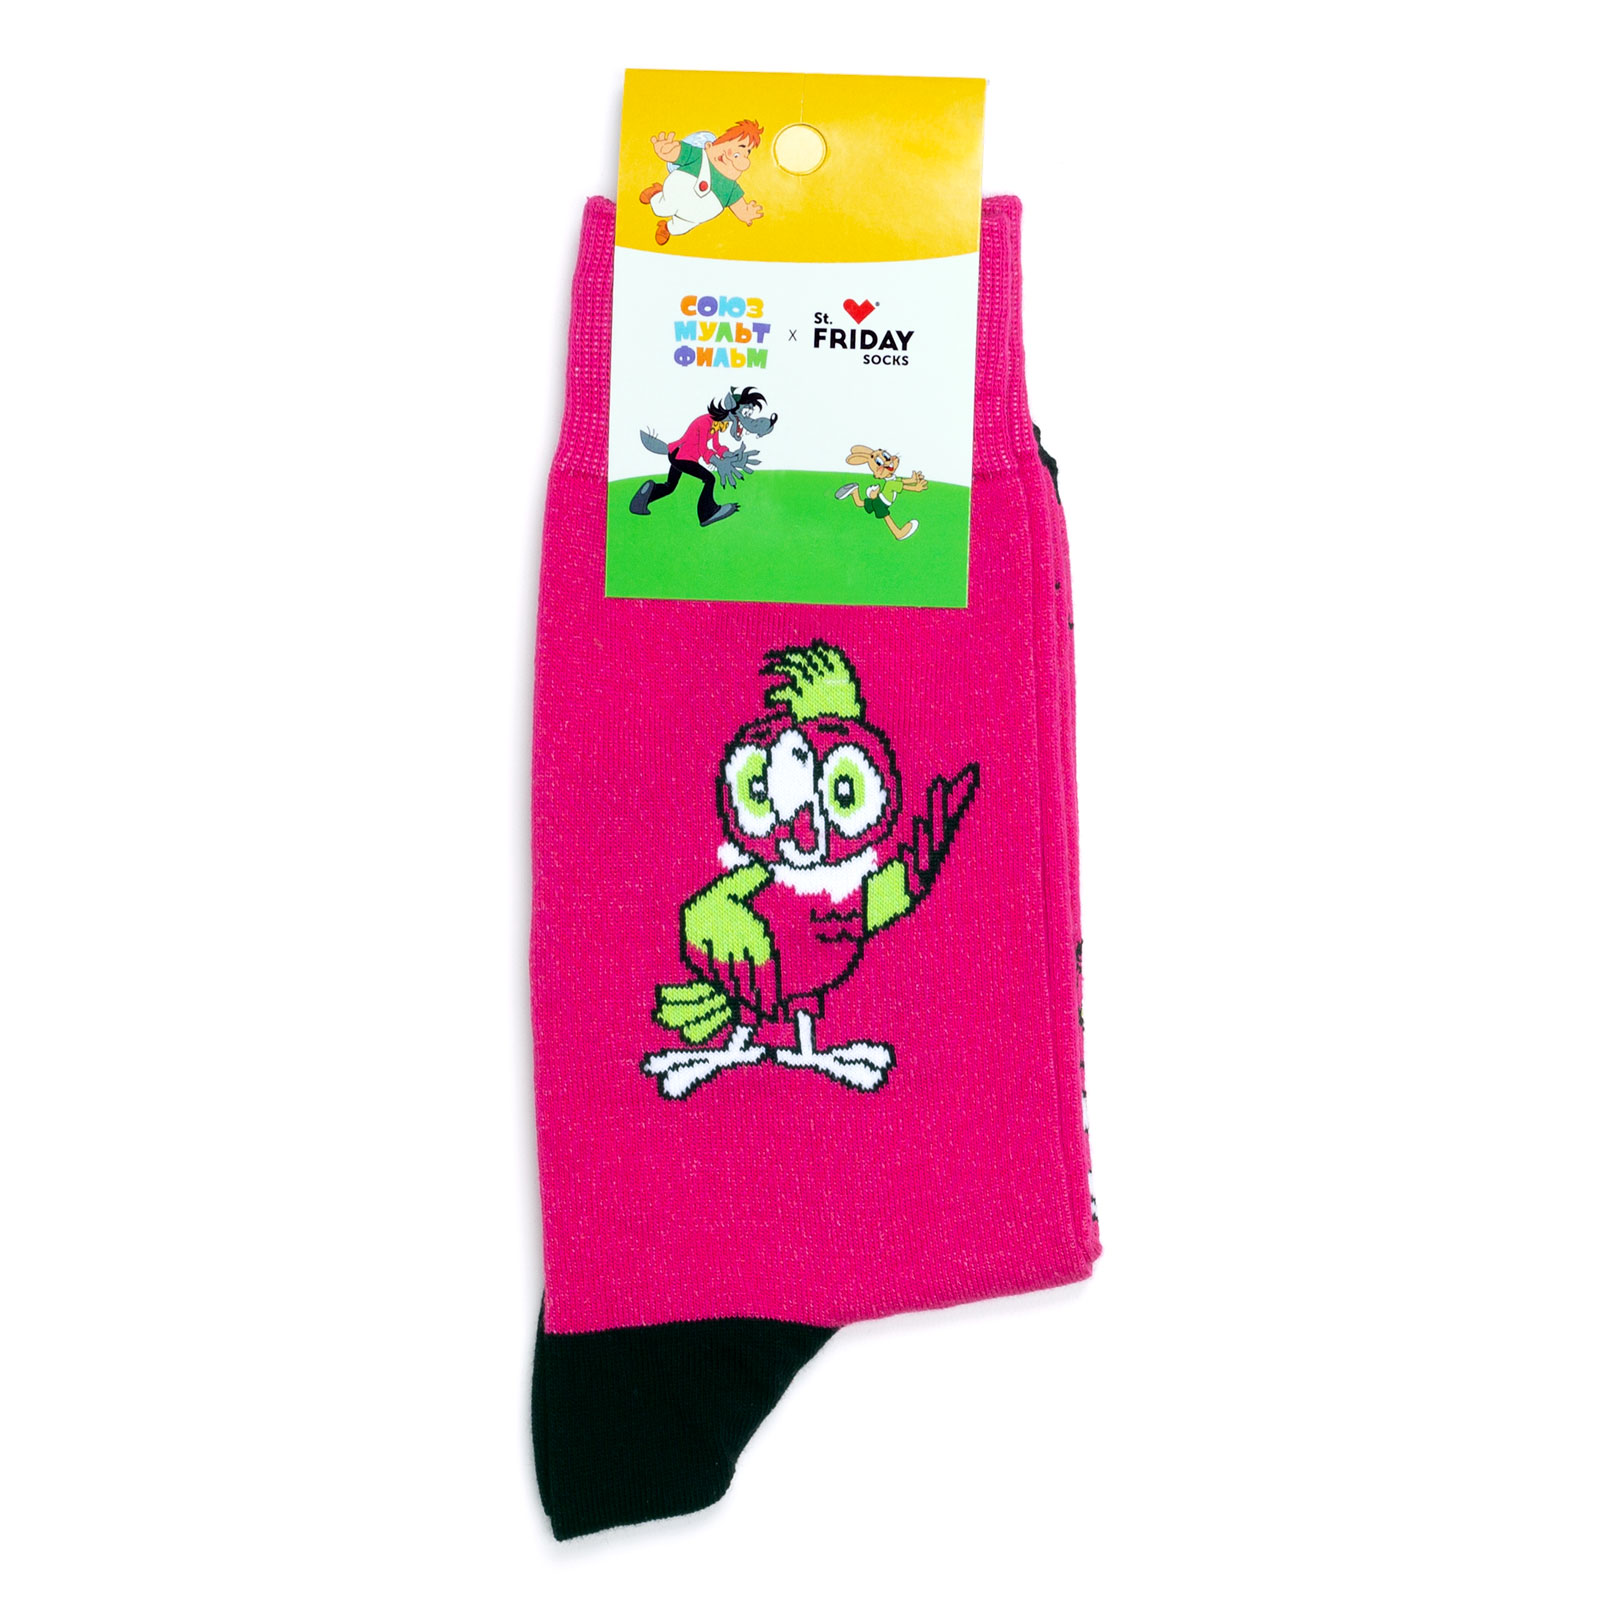 Носки с рисунками St.Friday Socks x Союзмультфильм - Свободу попугаям 42-46